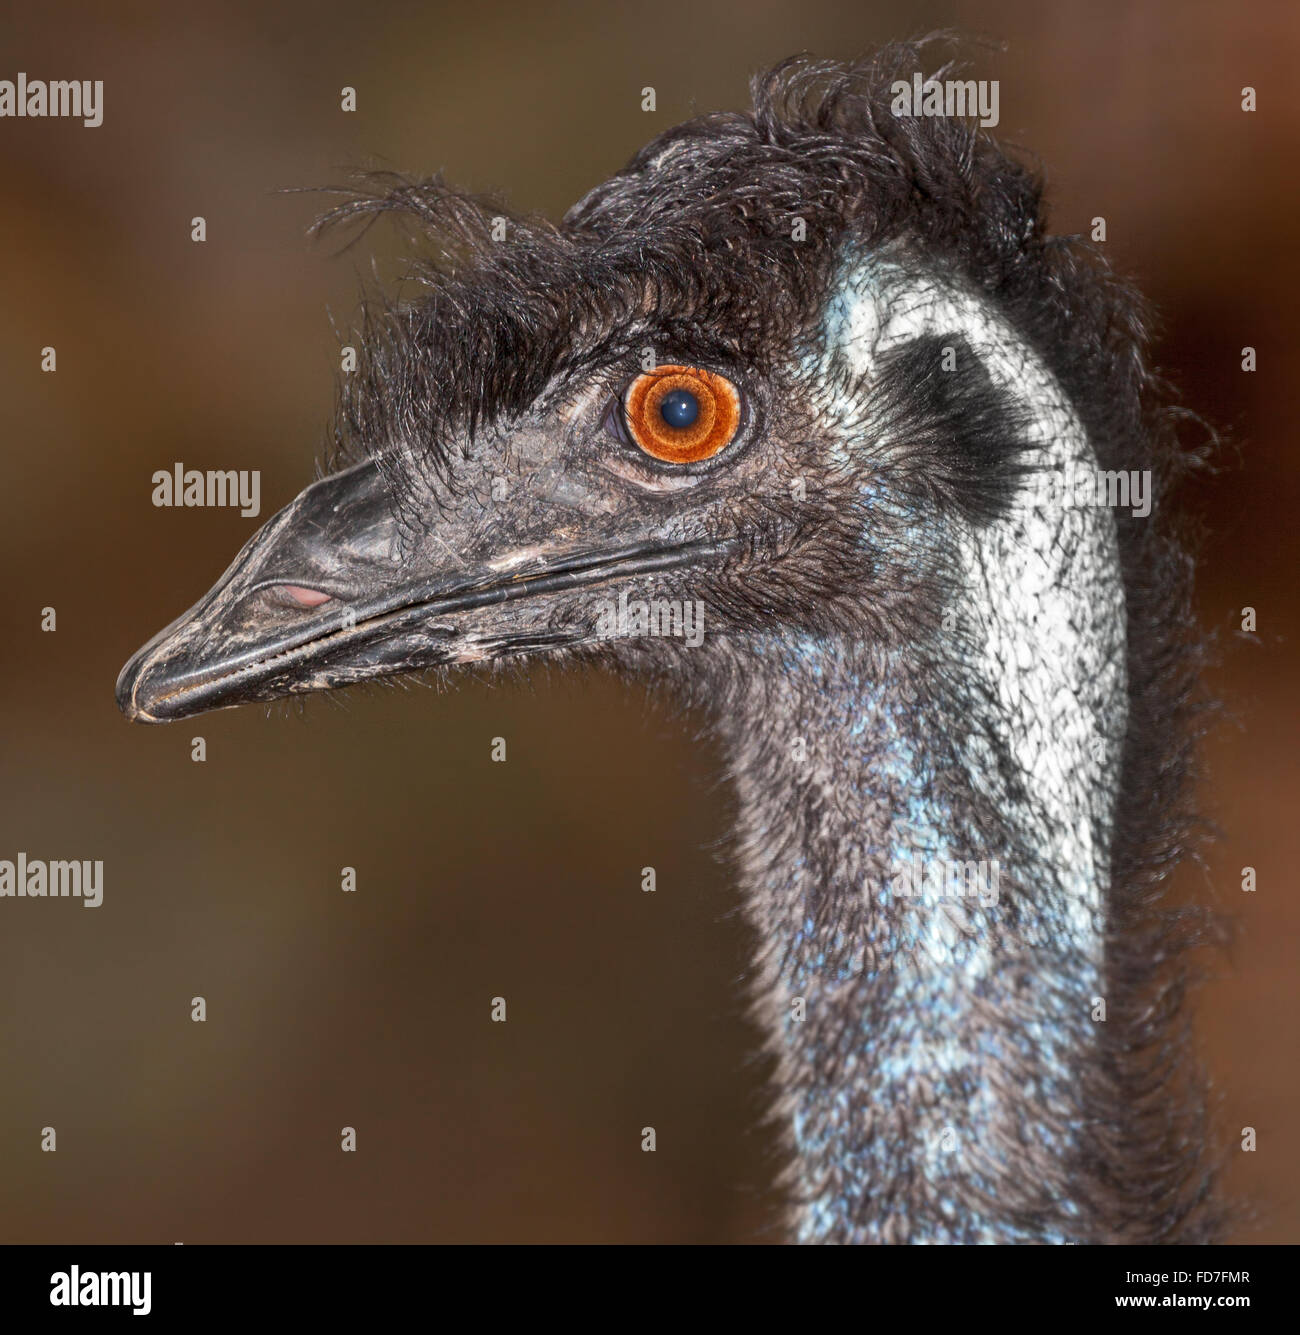 Eine australische Eingeborene, Emu, einem großen flugunfähigen Vogel. Stockfoto